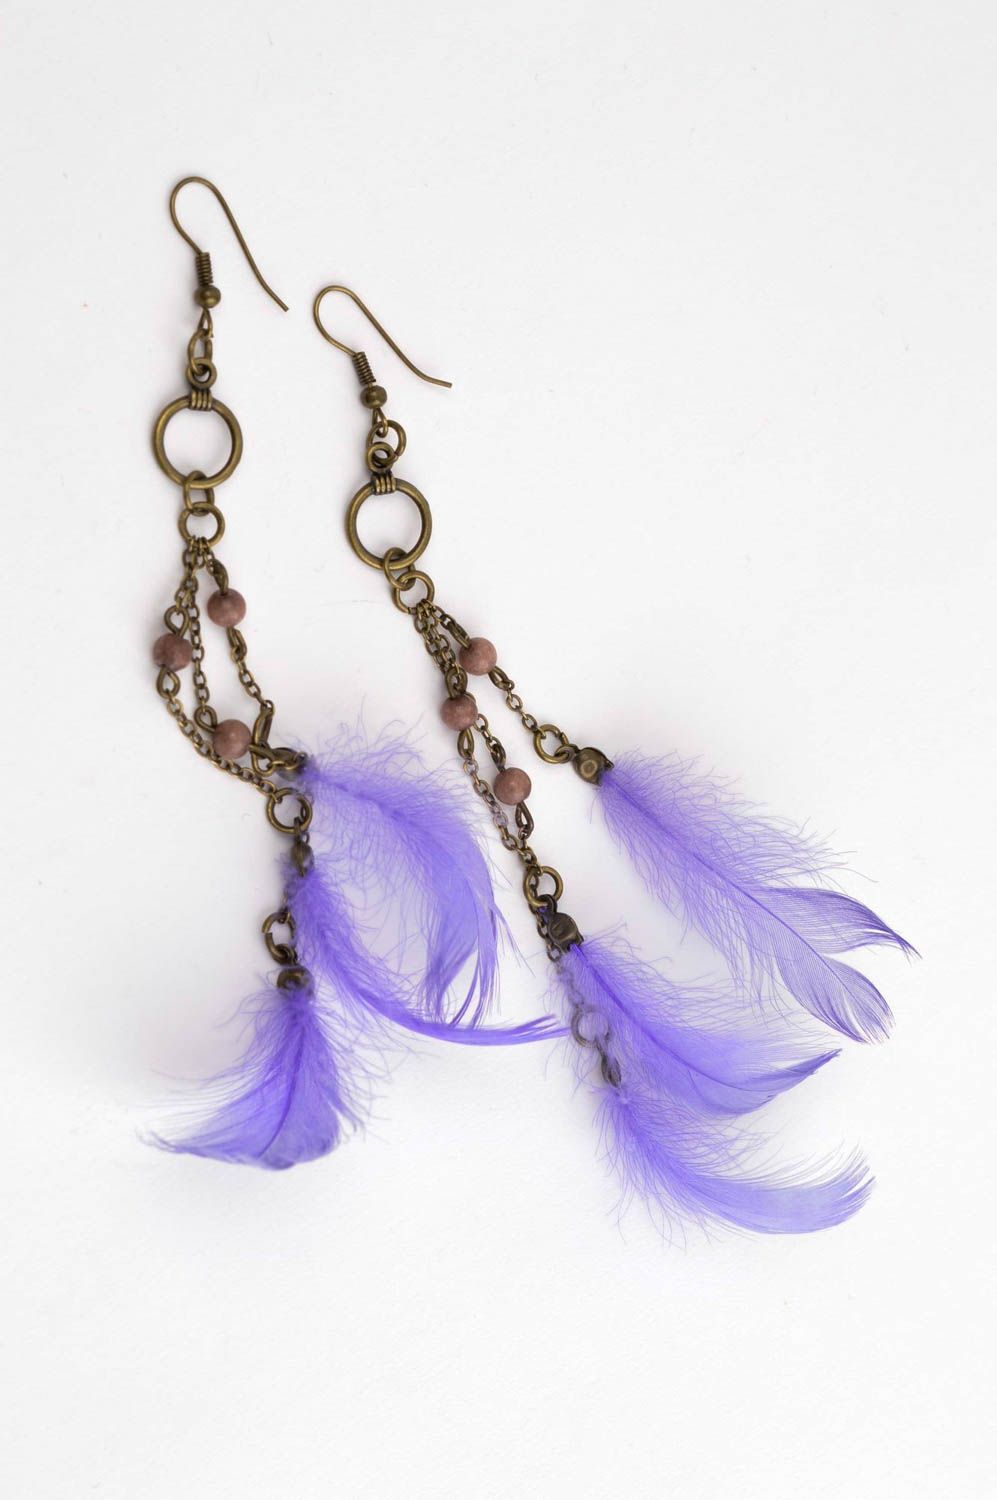 Handmade earrings designer feather earrings unusual gift for girl large earrings photo 3